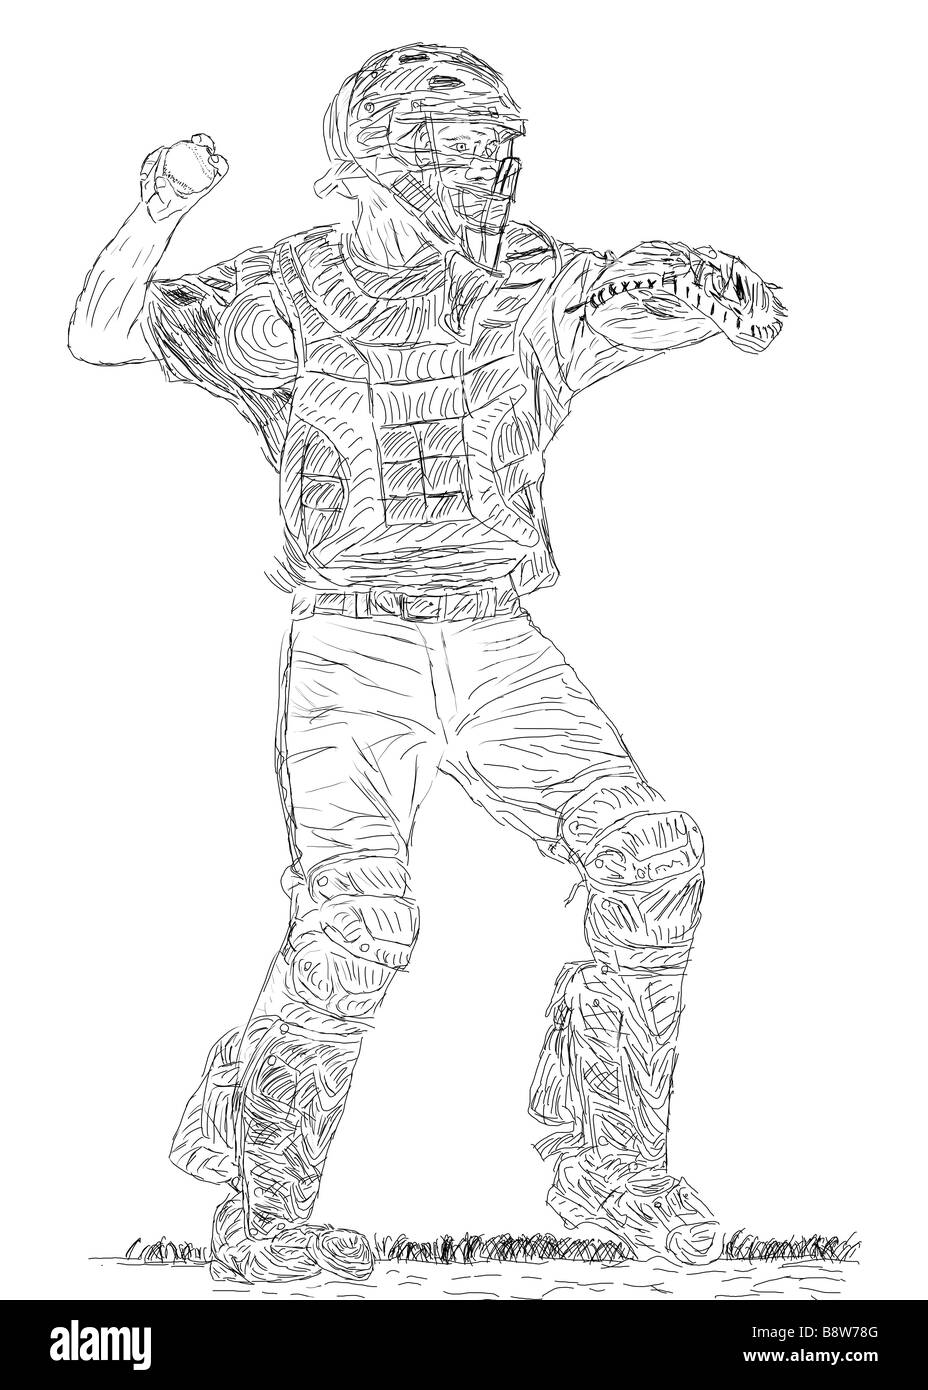 Penna e inchiostro disegno di un baseball Catcher circa a buttare la palla Foto Stock